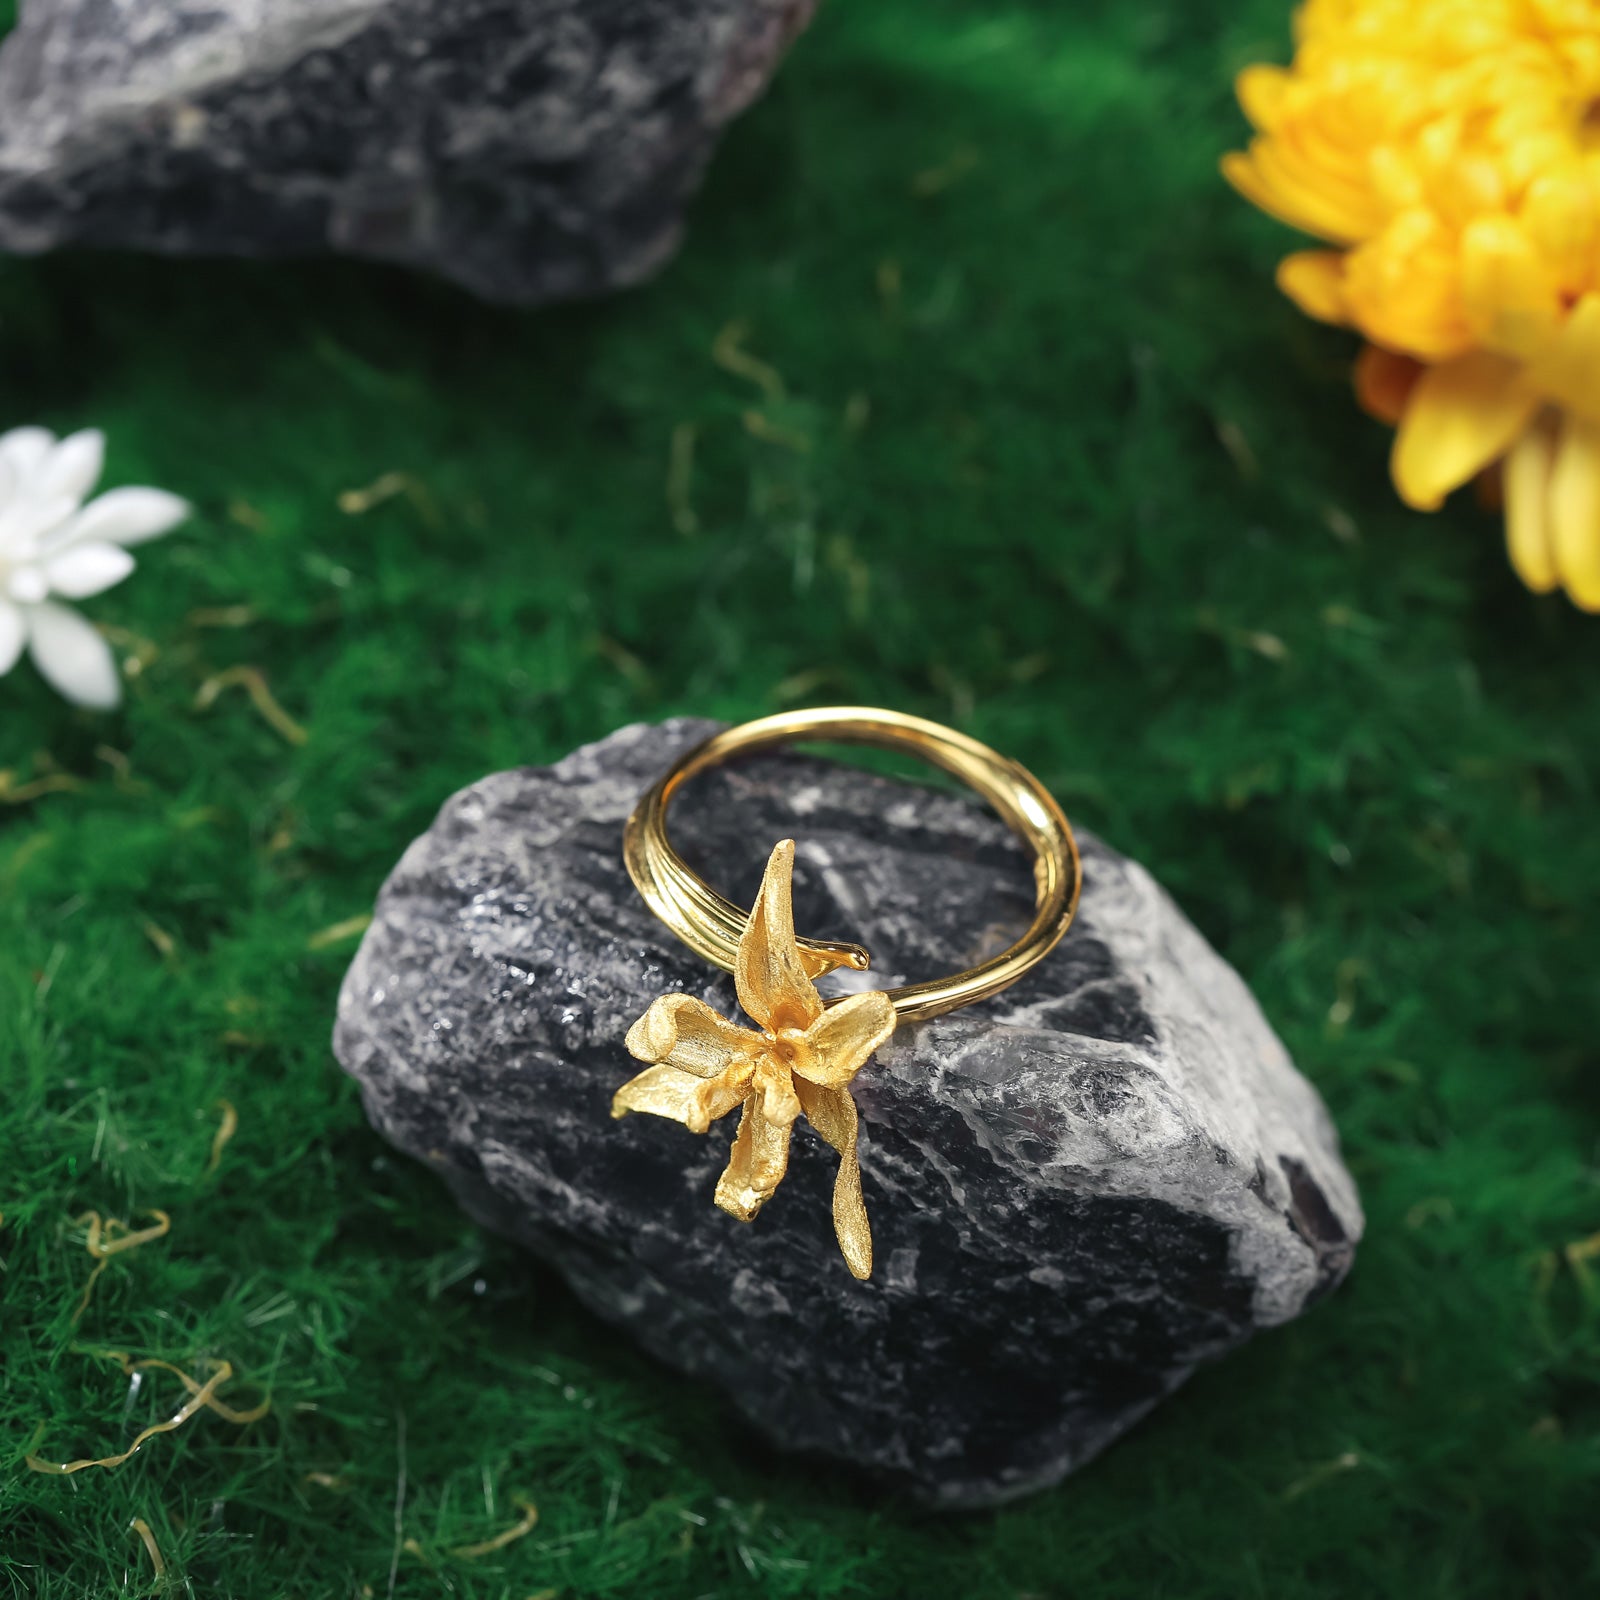 Selenichast Iris Flower Ring